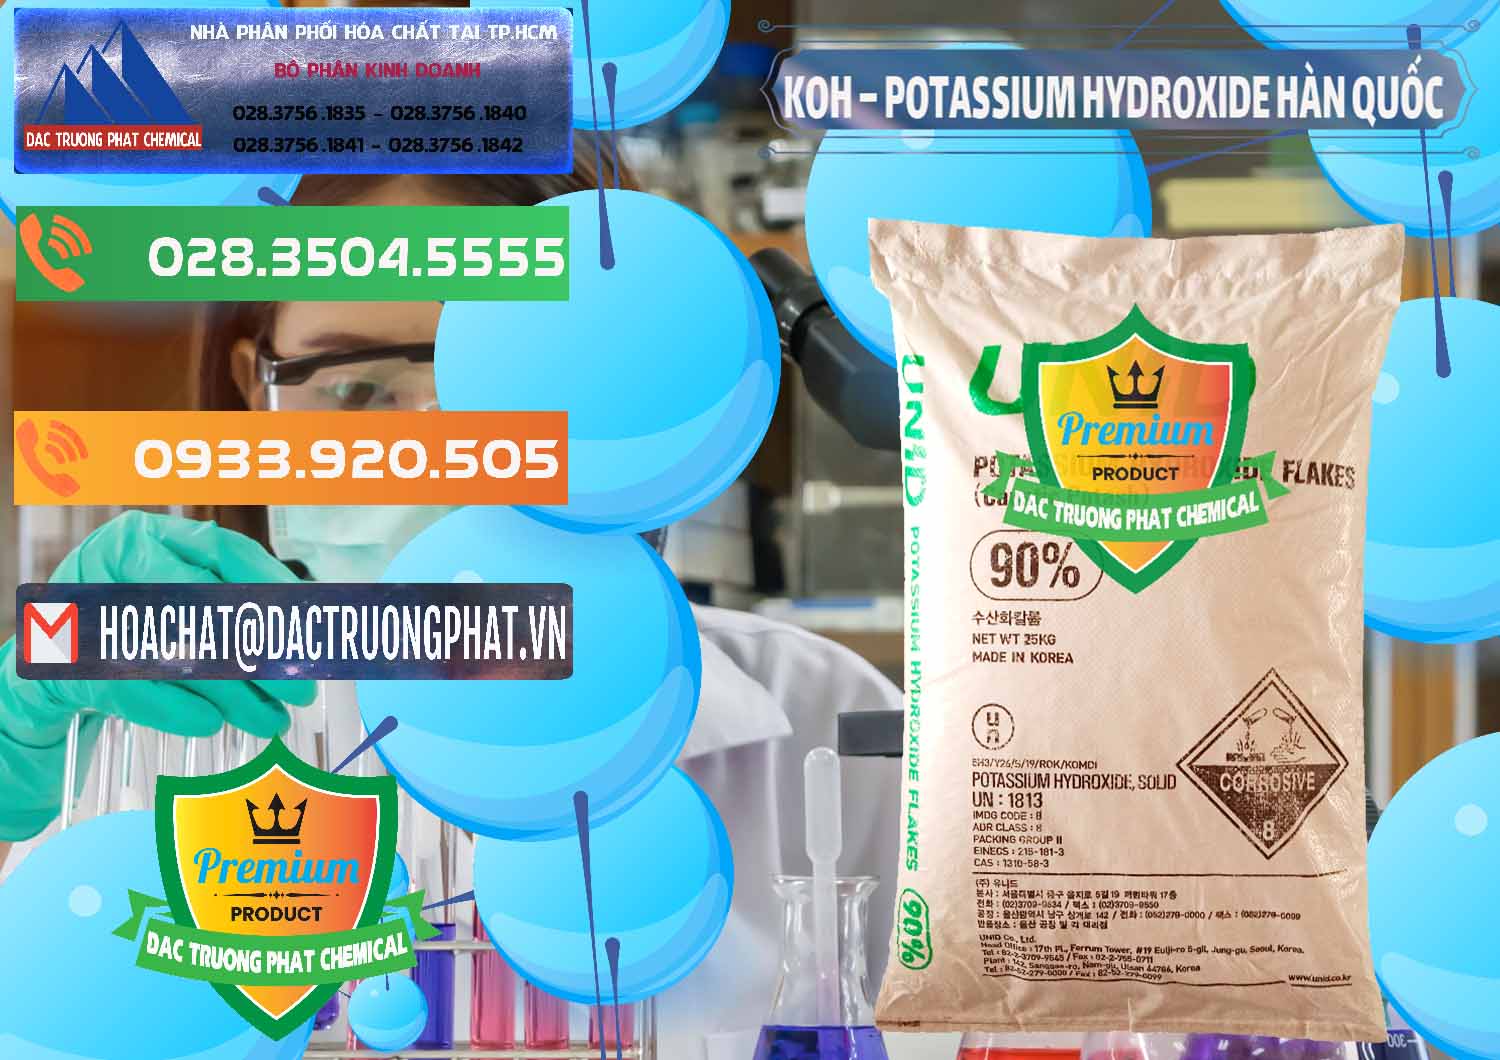 Đơn vị bán _ phân phối KOH ( 90%) – Potassium Hydroxide Unid Hàn Quốc Korea - 0090 - Đơn vị kinh doanh _ phân phối hóa chất tại TP.HCM - hoachatxulynuoc.com.vn